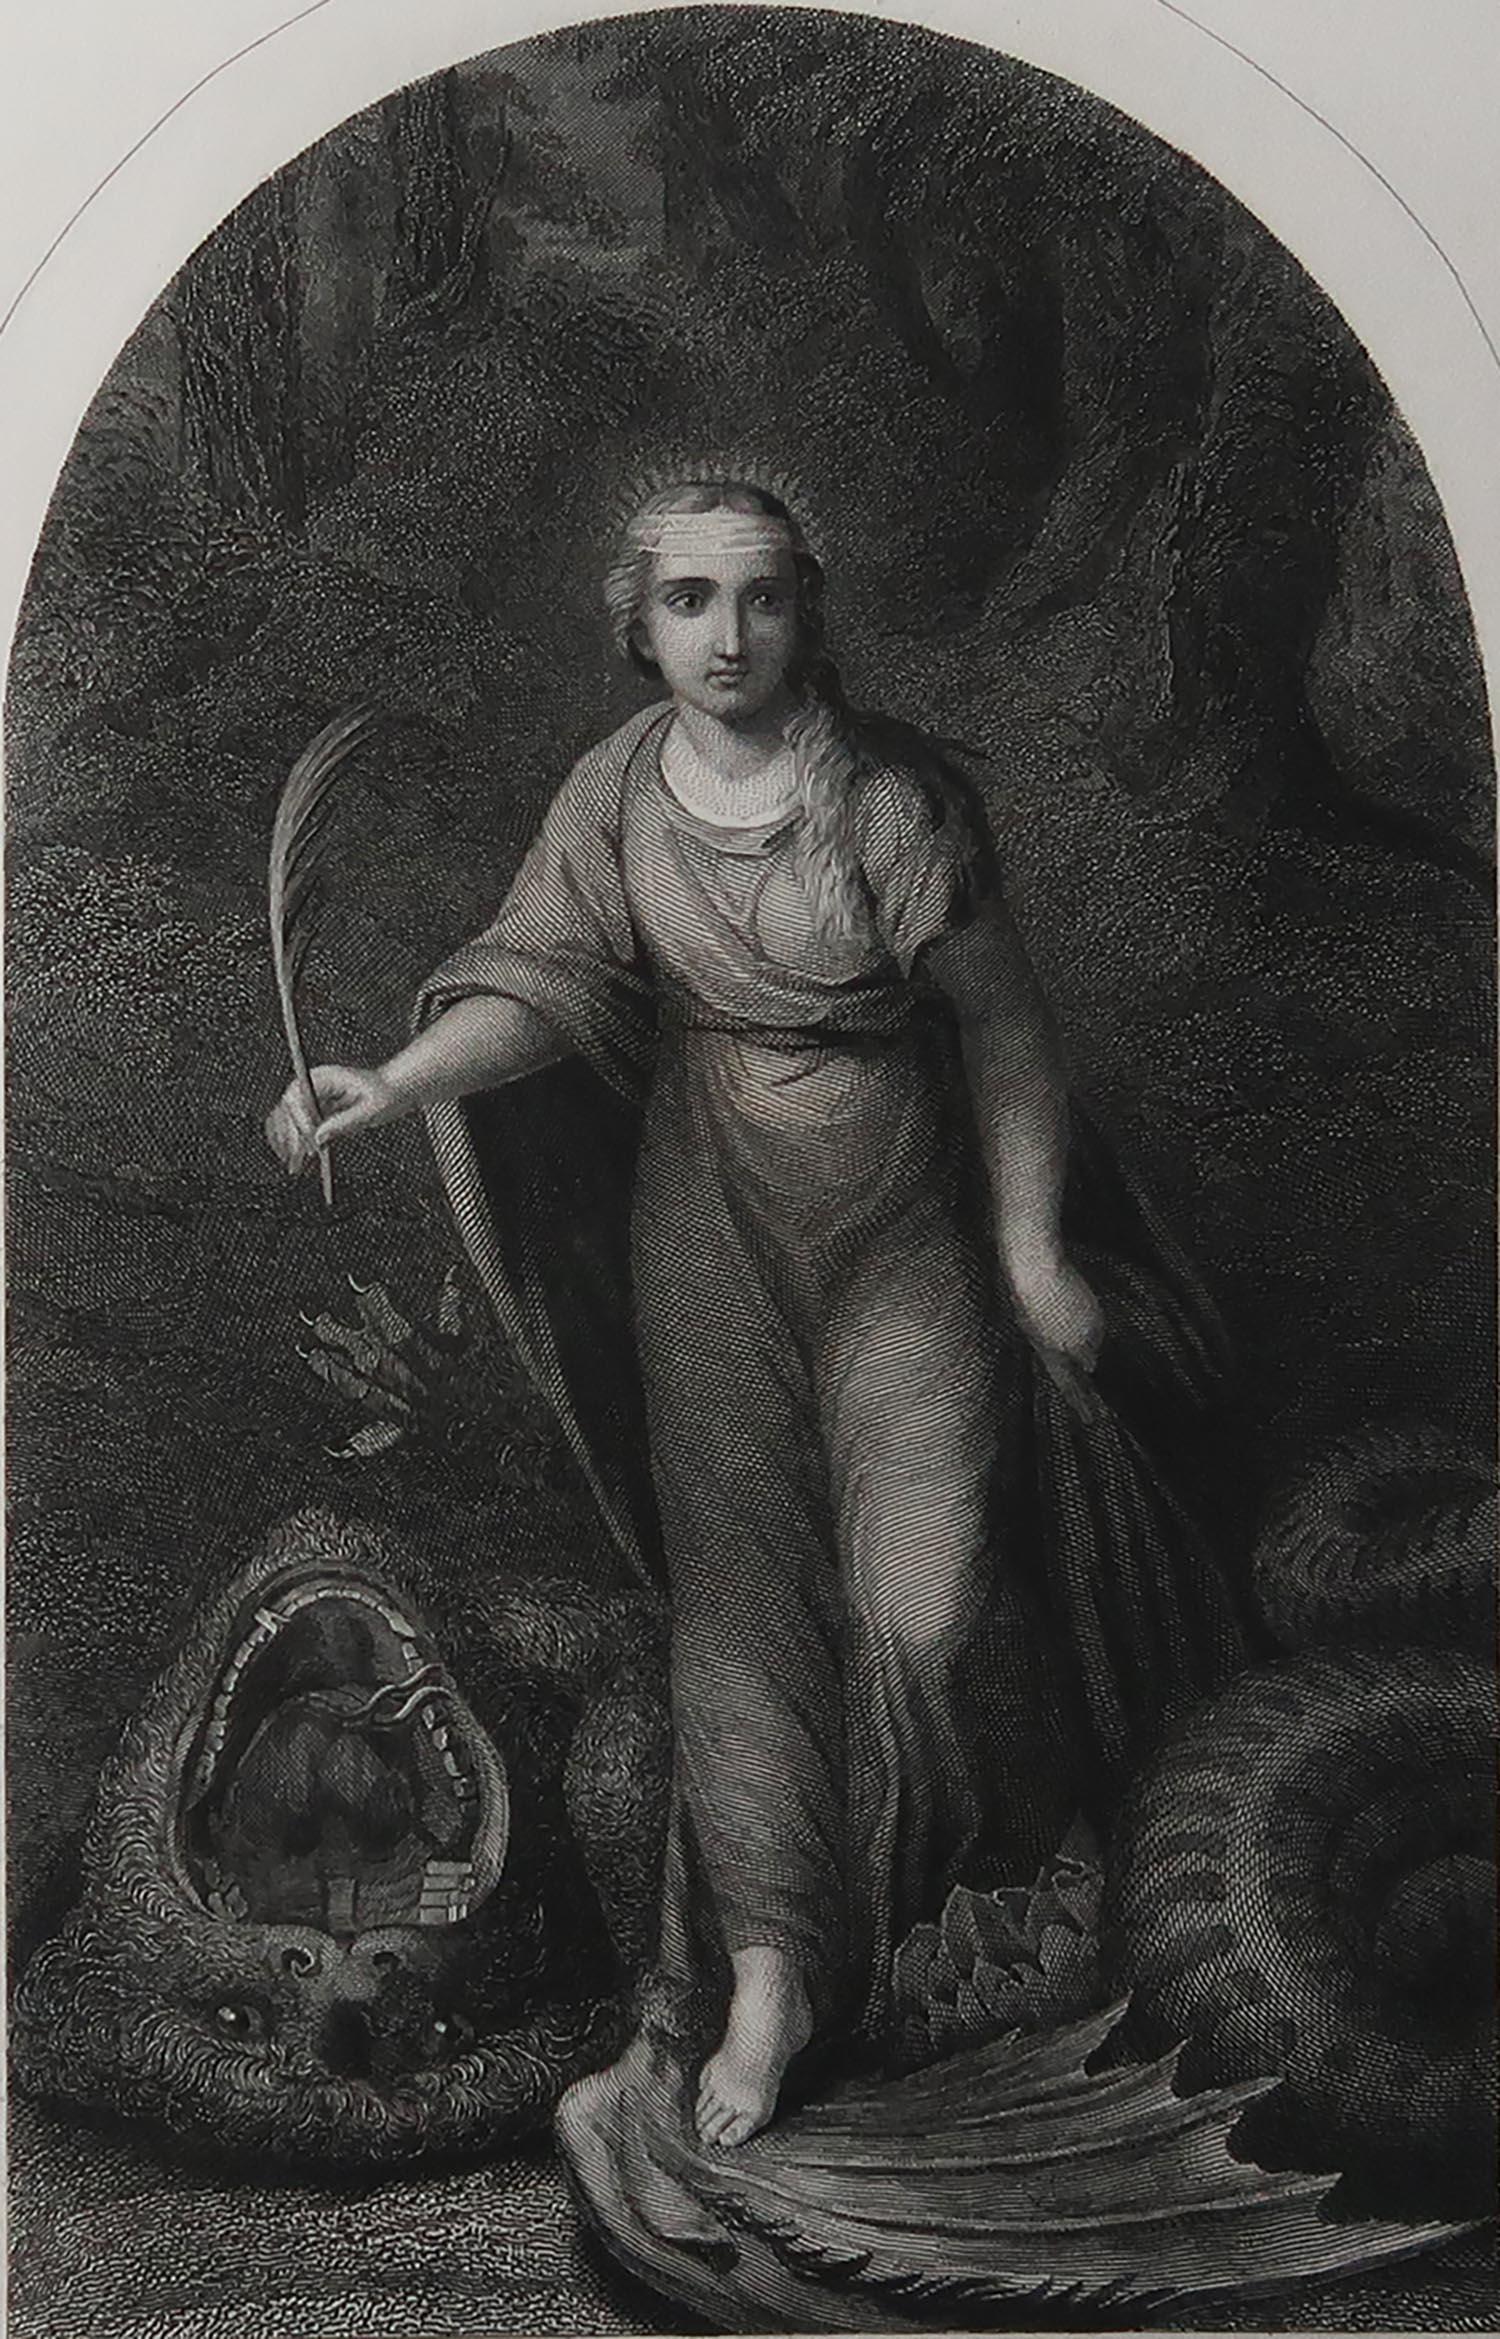 Wonderful image after Raphael

Fine Steel engraving. 

Published C.1850

Unframed.

